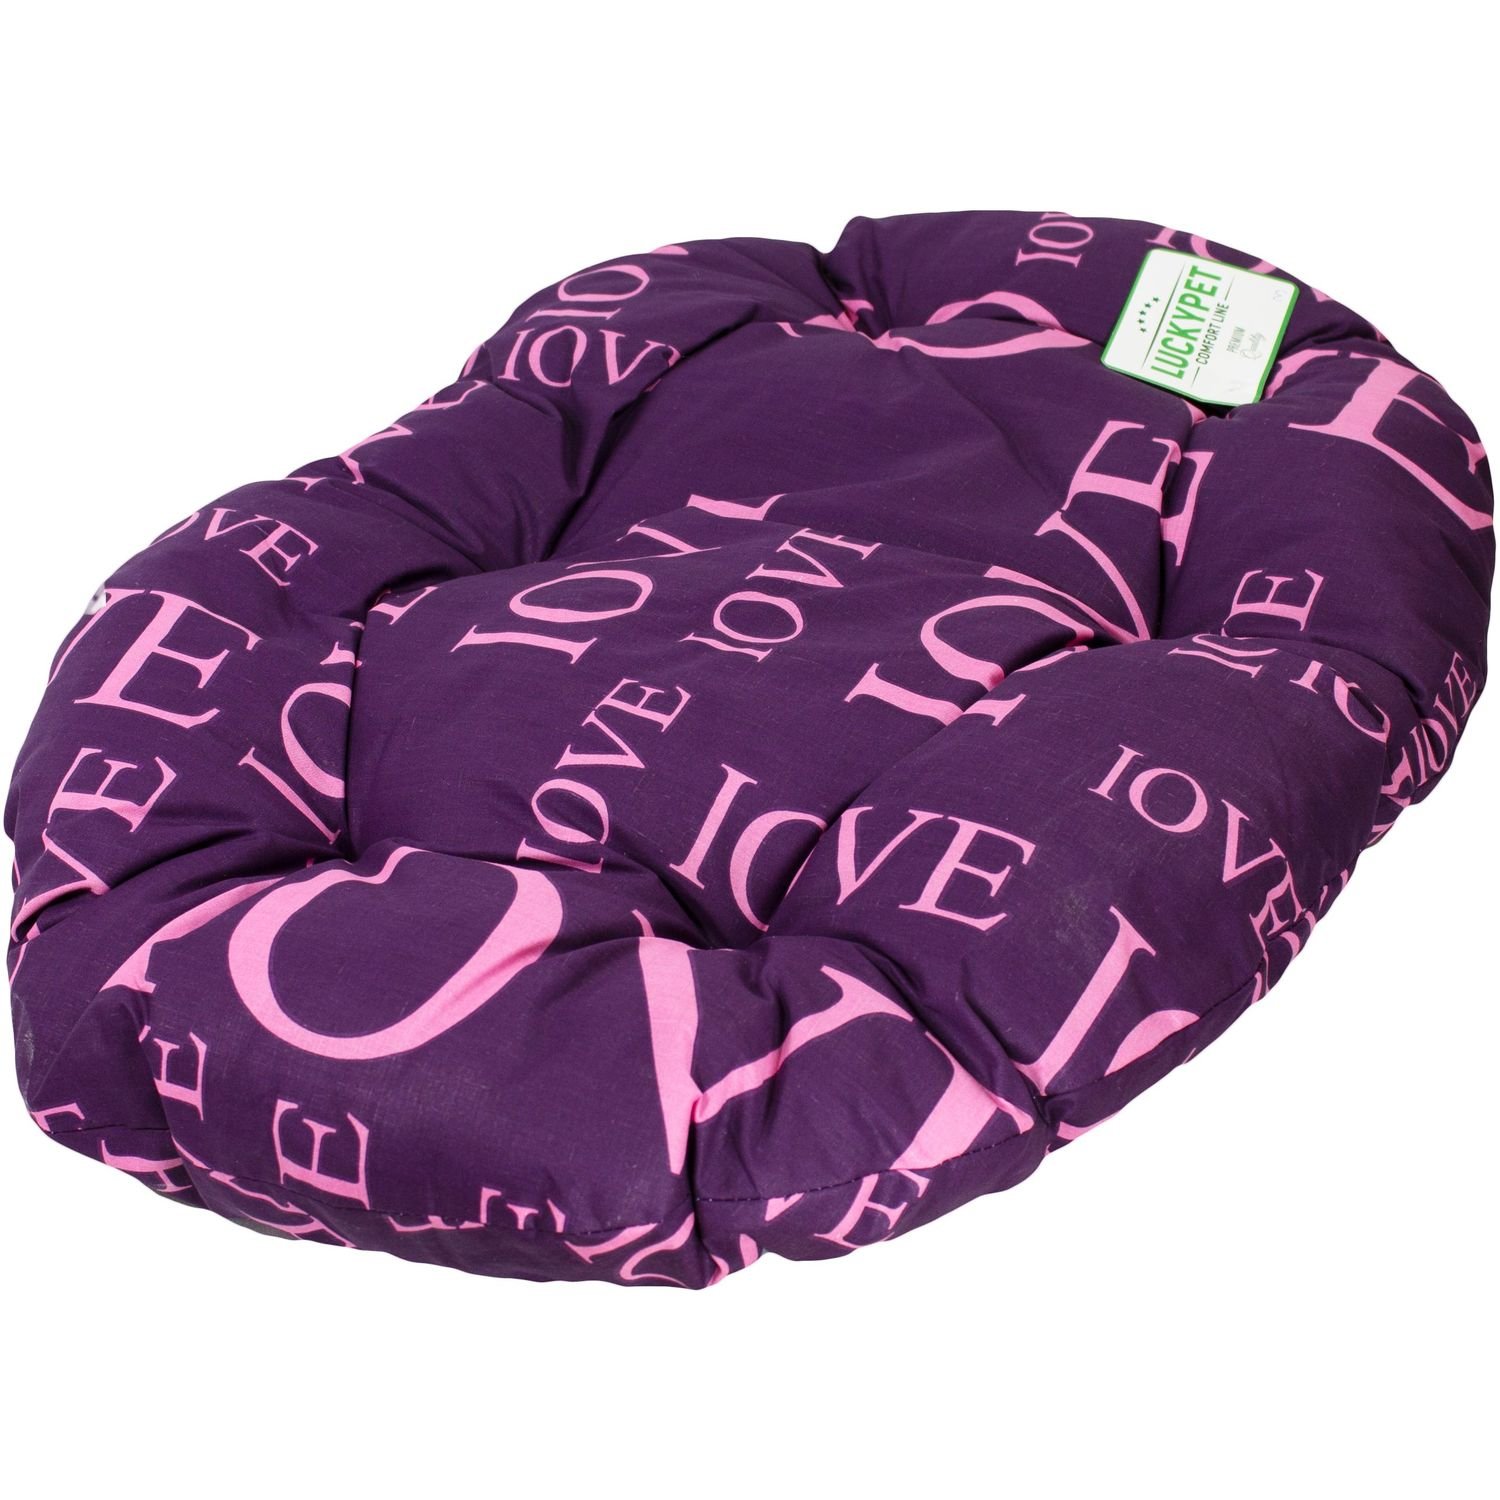 Лежак-подушка Luсky Pet Дрема №3, фиолетовый, 55x80 см - фото 1